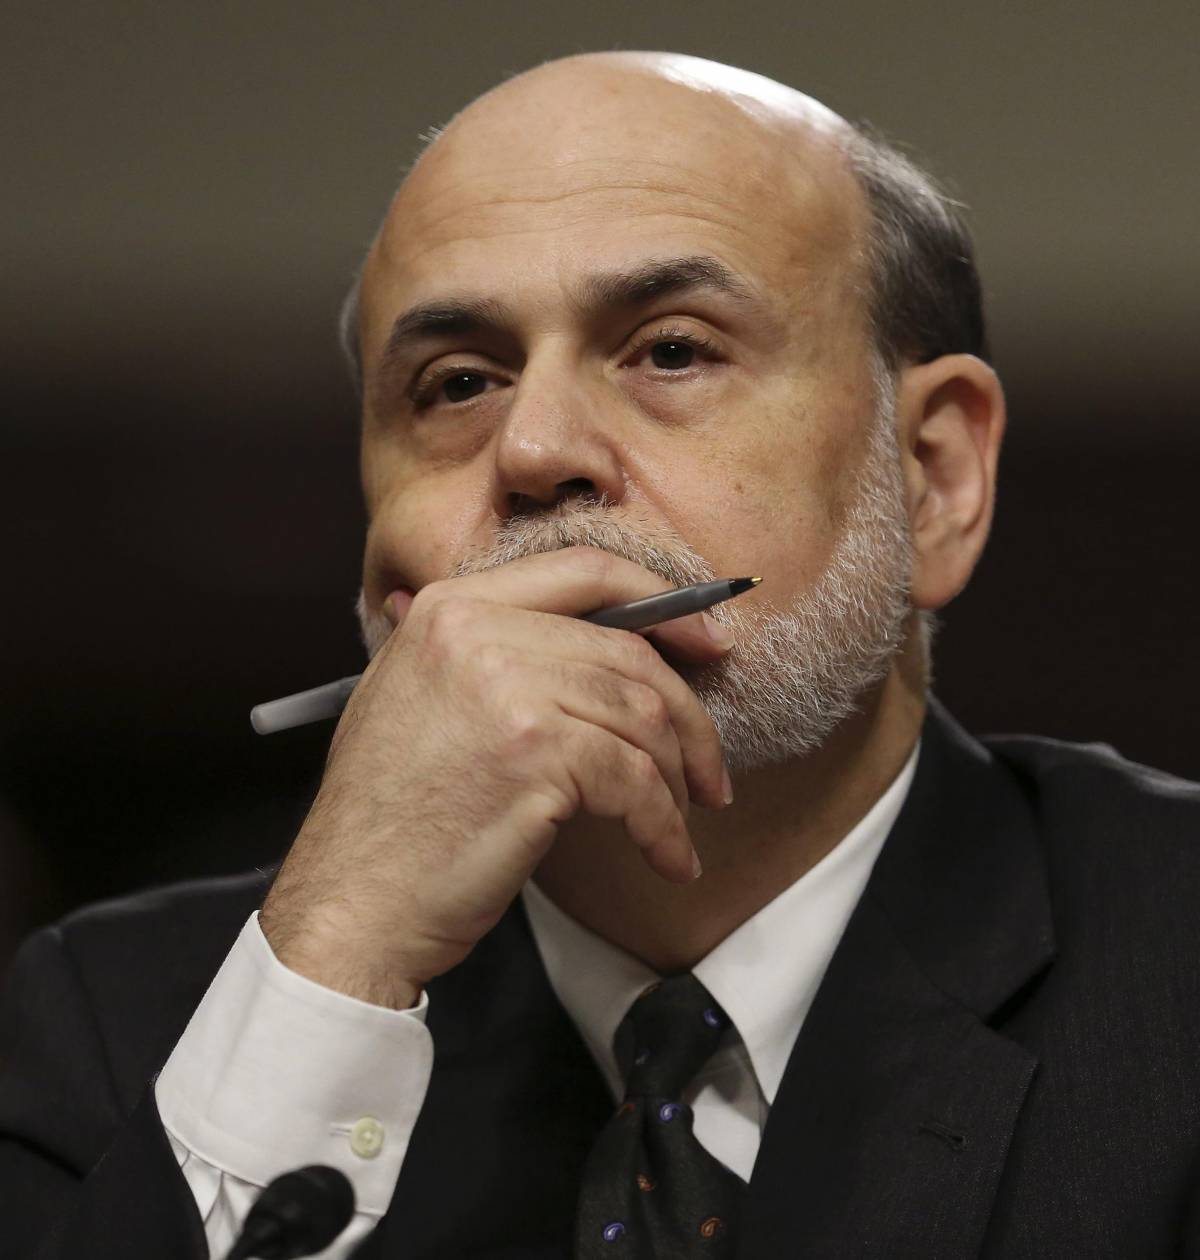 Bernanke stamperà altri dollari